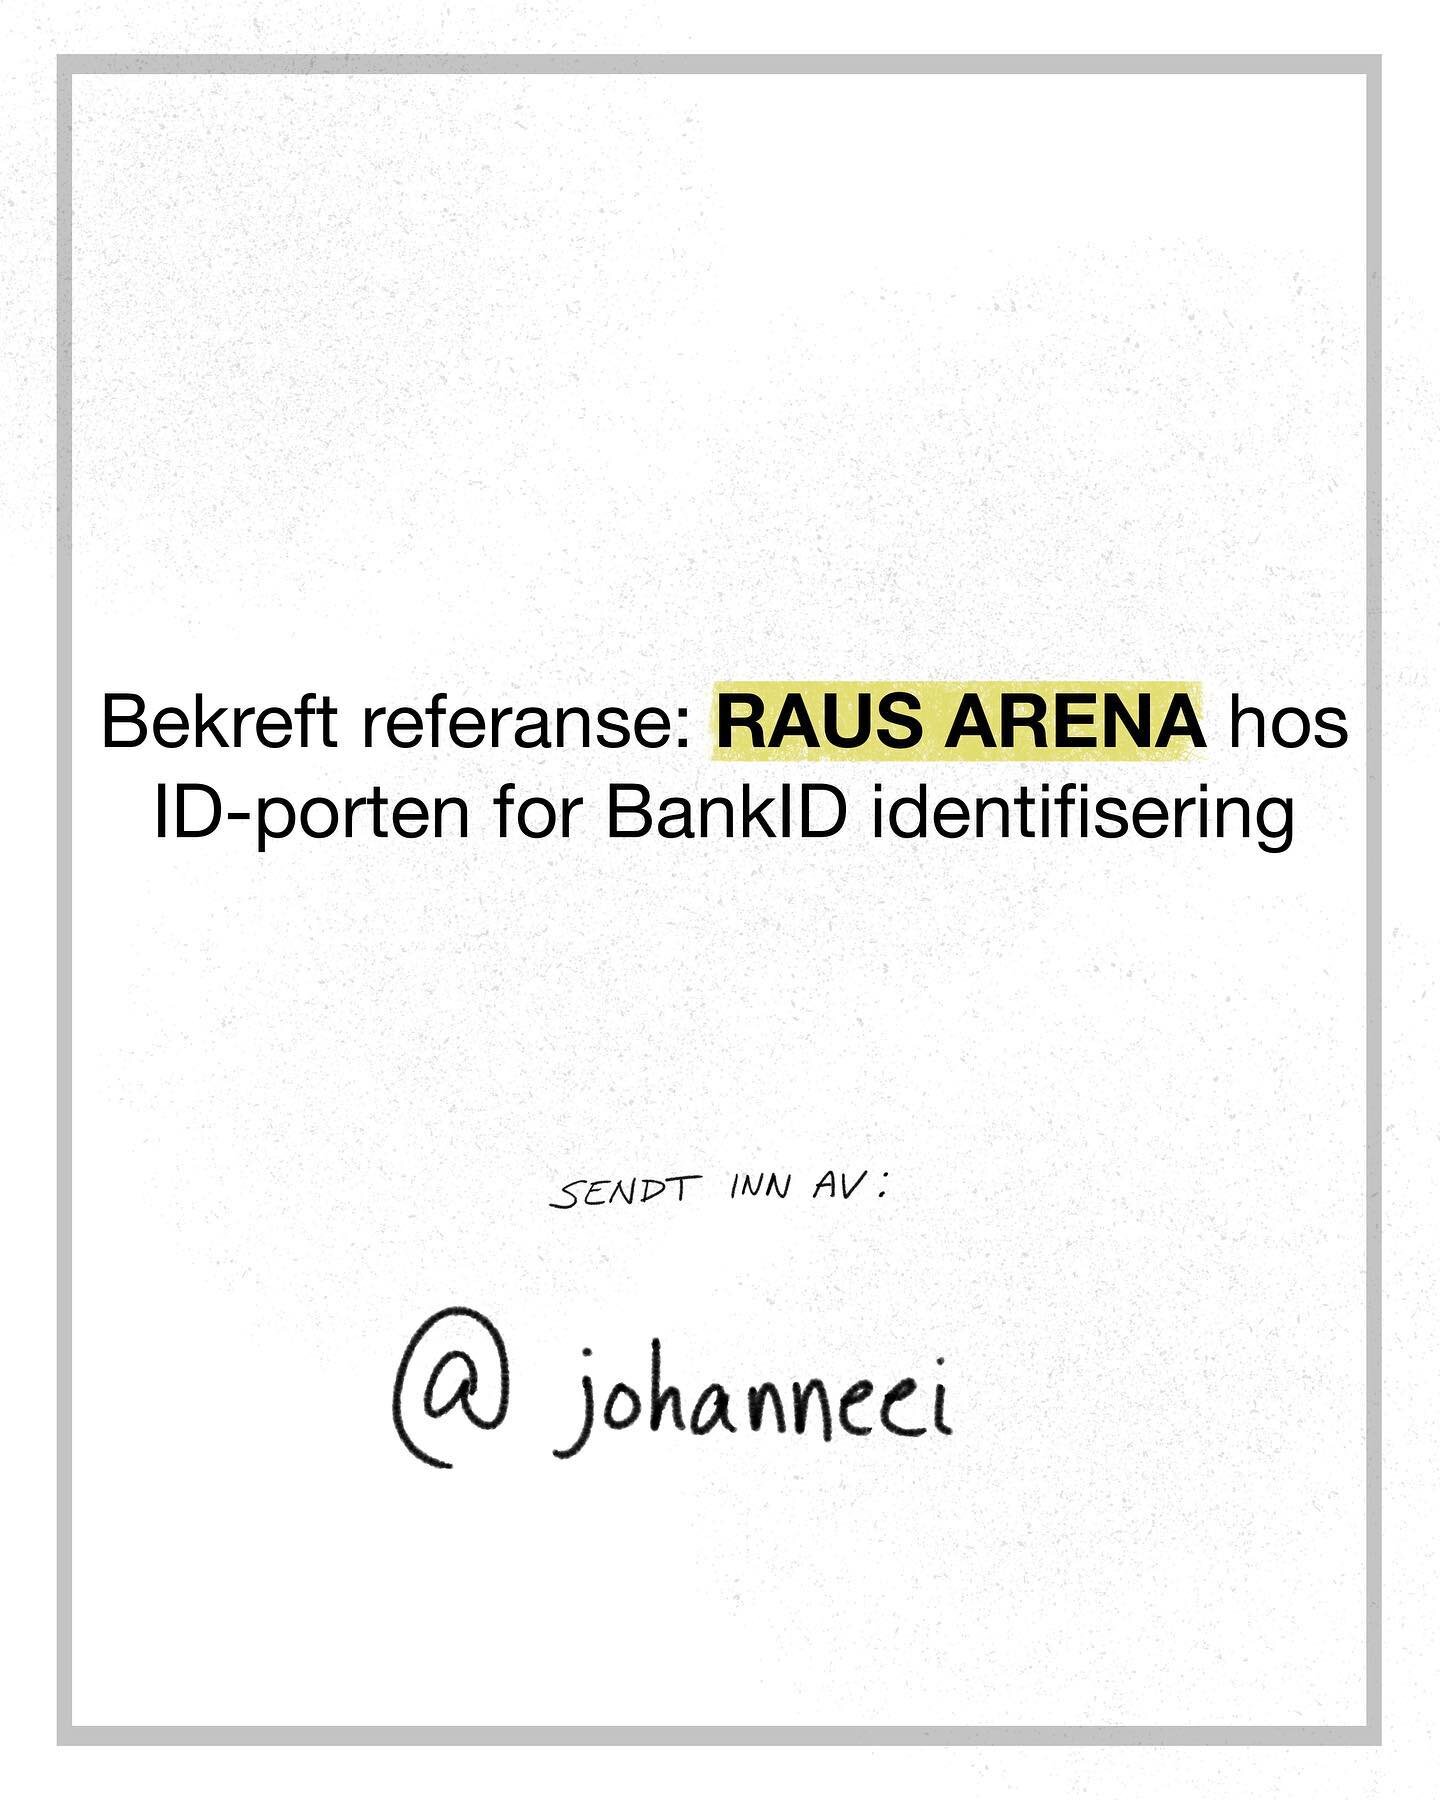 RAUS ARENA

&bull;
&bull;
&bull;
&bull;
&bull;
&bull;
&bull;
#sketch #illustration #bankpaamobil #tegning #illustrert #humor #photoshop #bank #norge #norsk #absurd #norskhumor #raus #arena #g&oslash;y #stadion #snill #vennlig